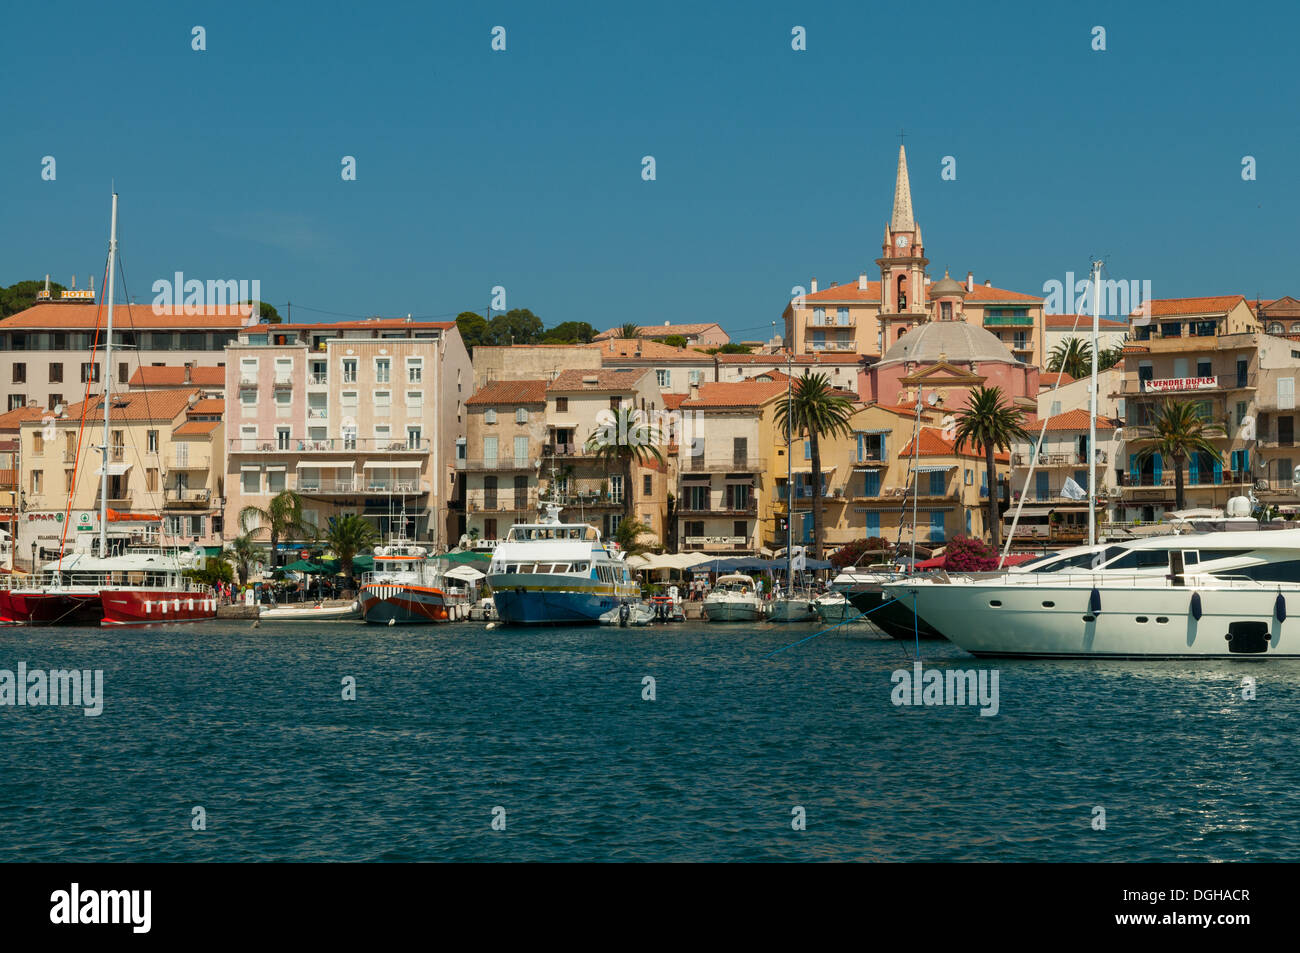 Le port de plaisance de Calvi, Haute Corse, France Banque D'Images